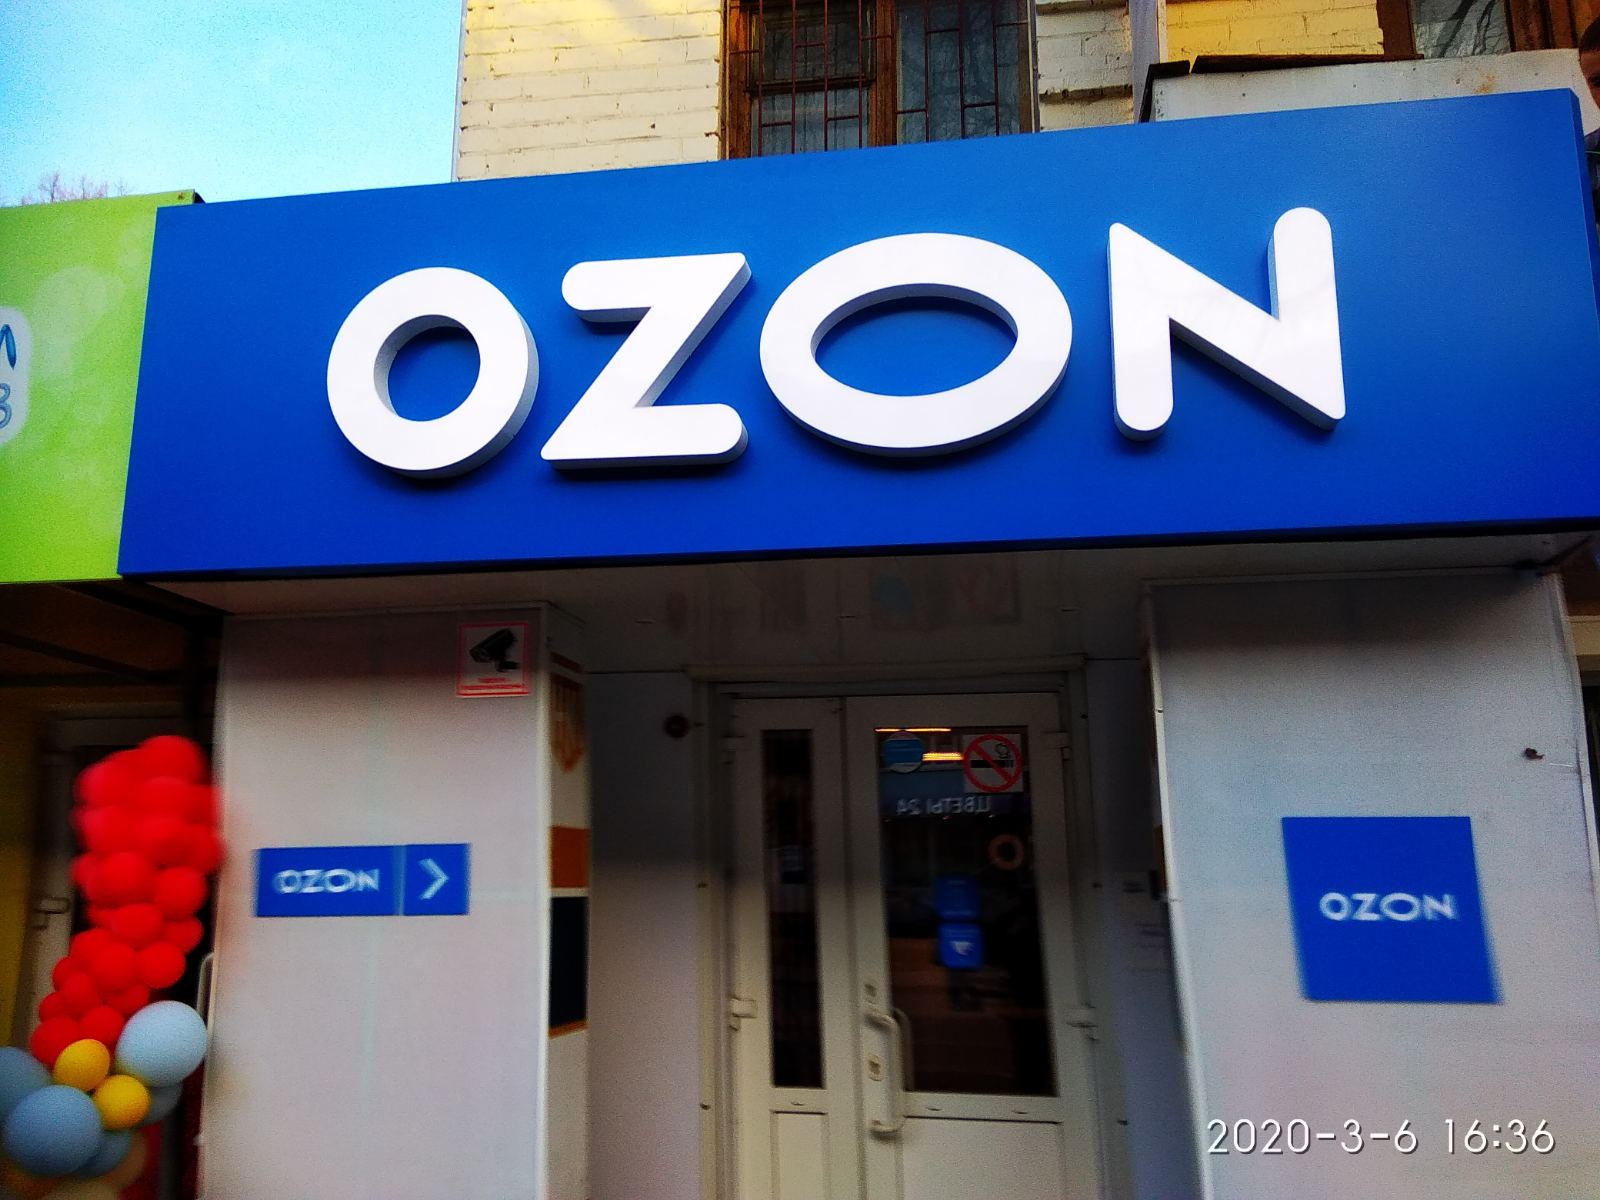 Озон болотное. Озон магазин. Вывеска Озон. Вывеска Озон на подложке. Фото магазина Озон.